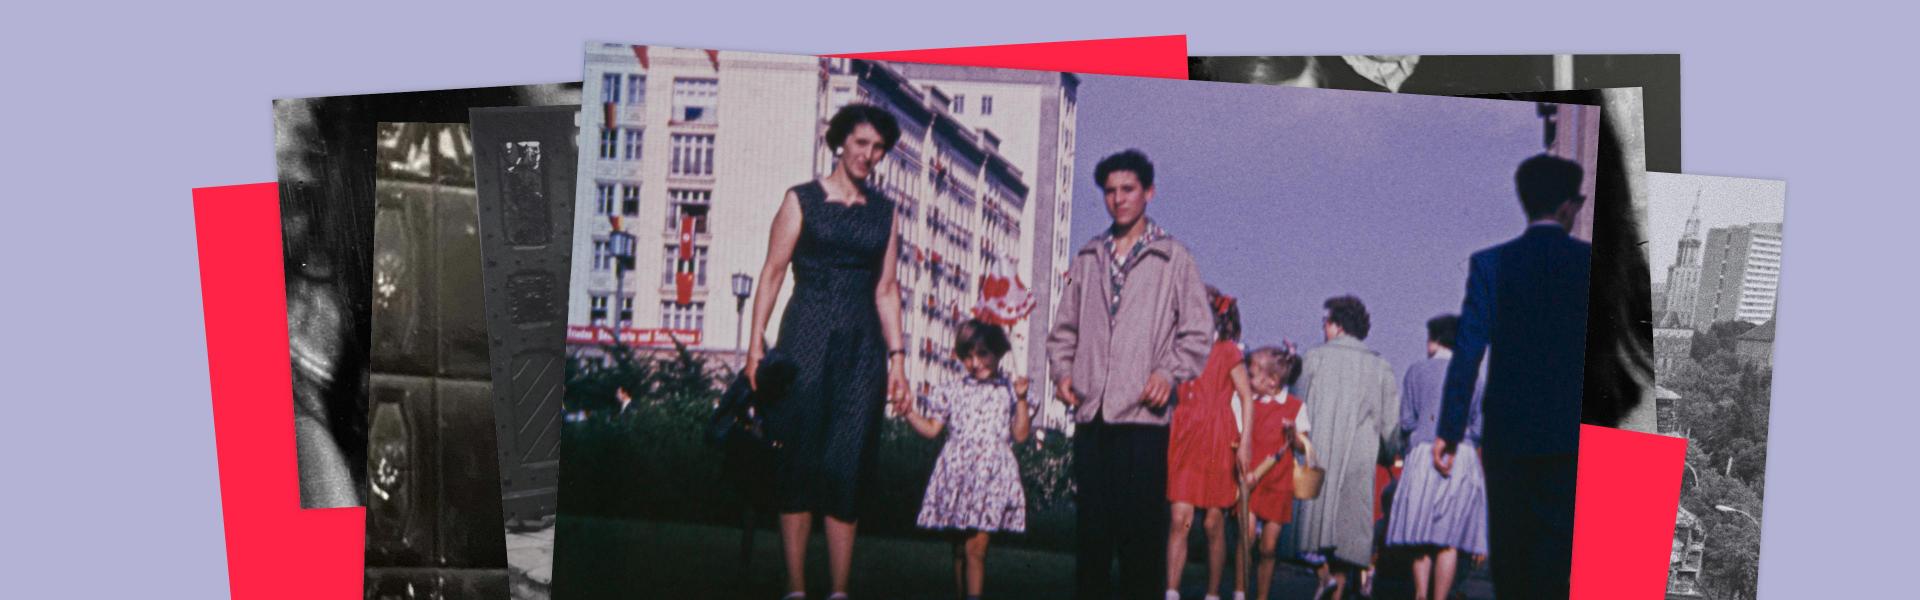 Gestaltete Grafik mit übereinanderliegenden Fotos und roten Quadraten, das oberste Foto zeigt eine Frau mit Kind an der Hand, daneben ein Jugendlicher, im Hintergrund die sogenannten Arbeiterpalästen in der Stalinallee.